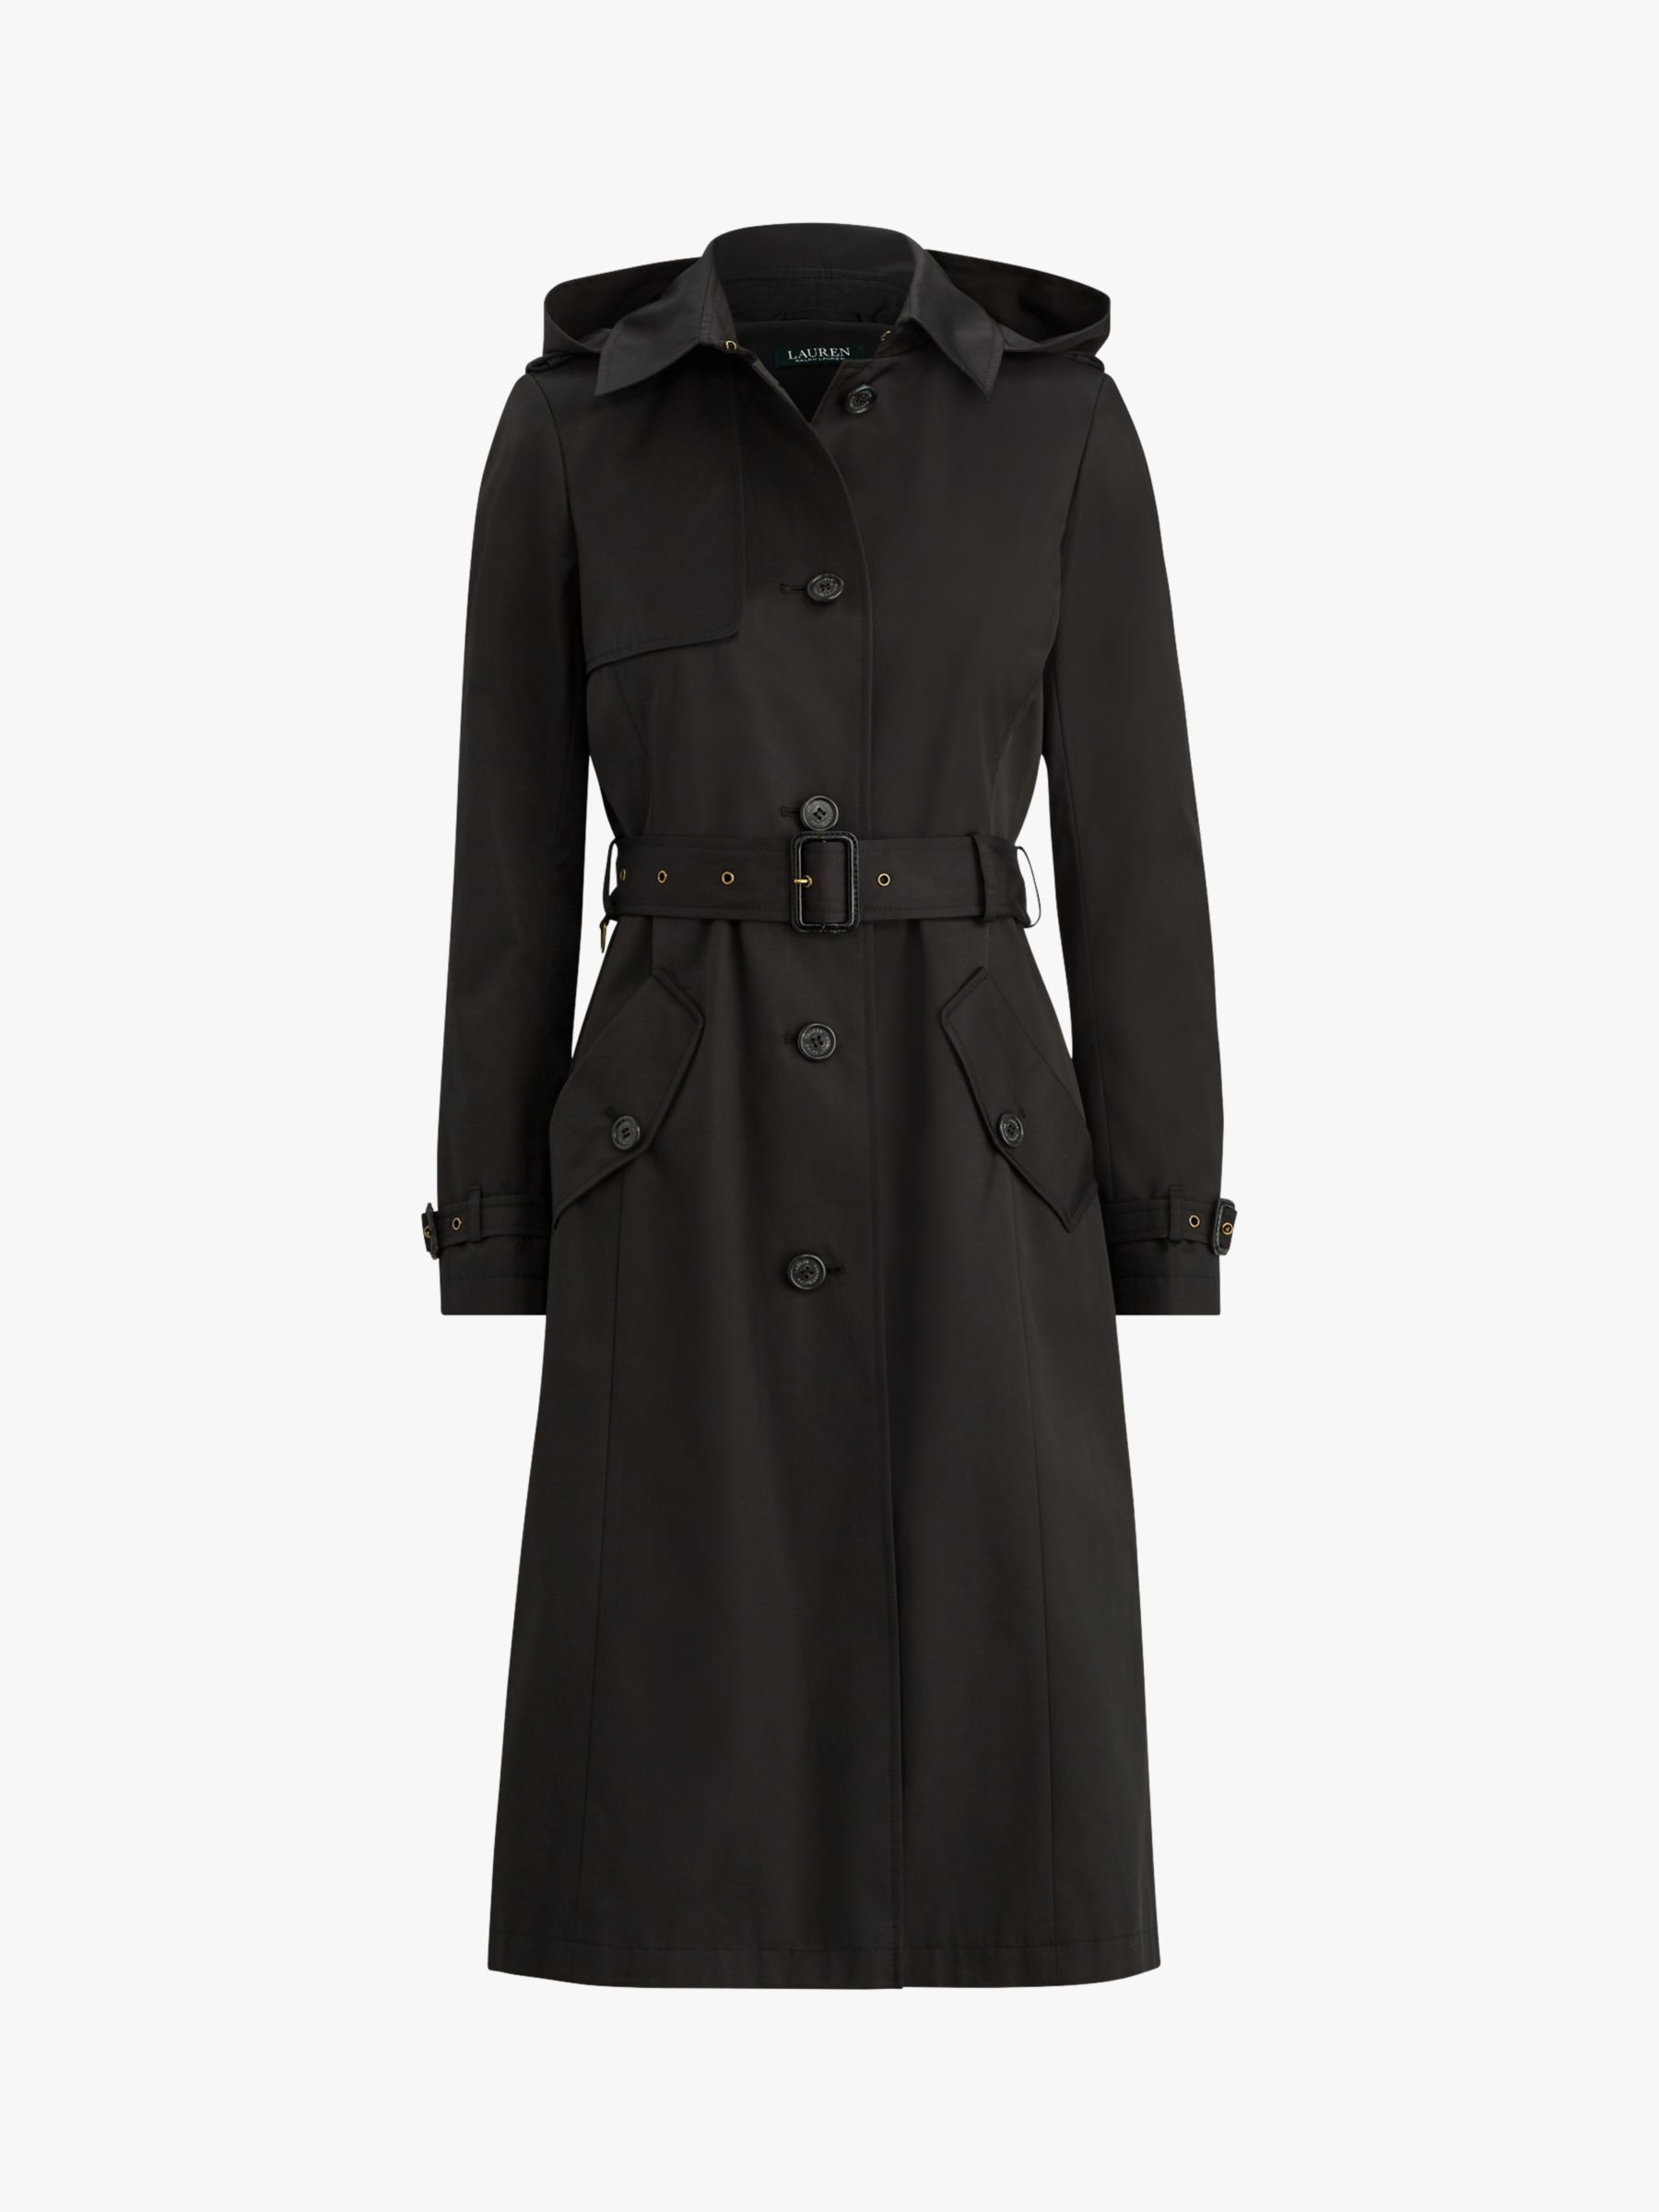 ralph lauren black trench coat